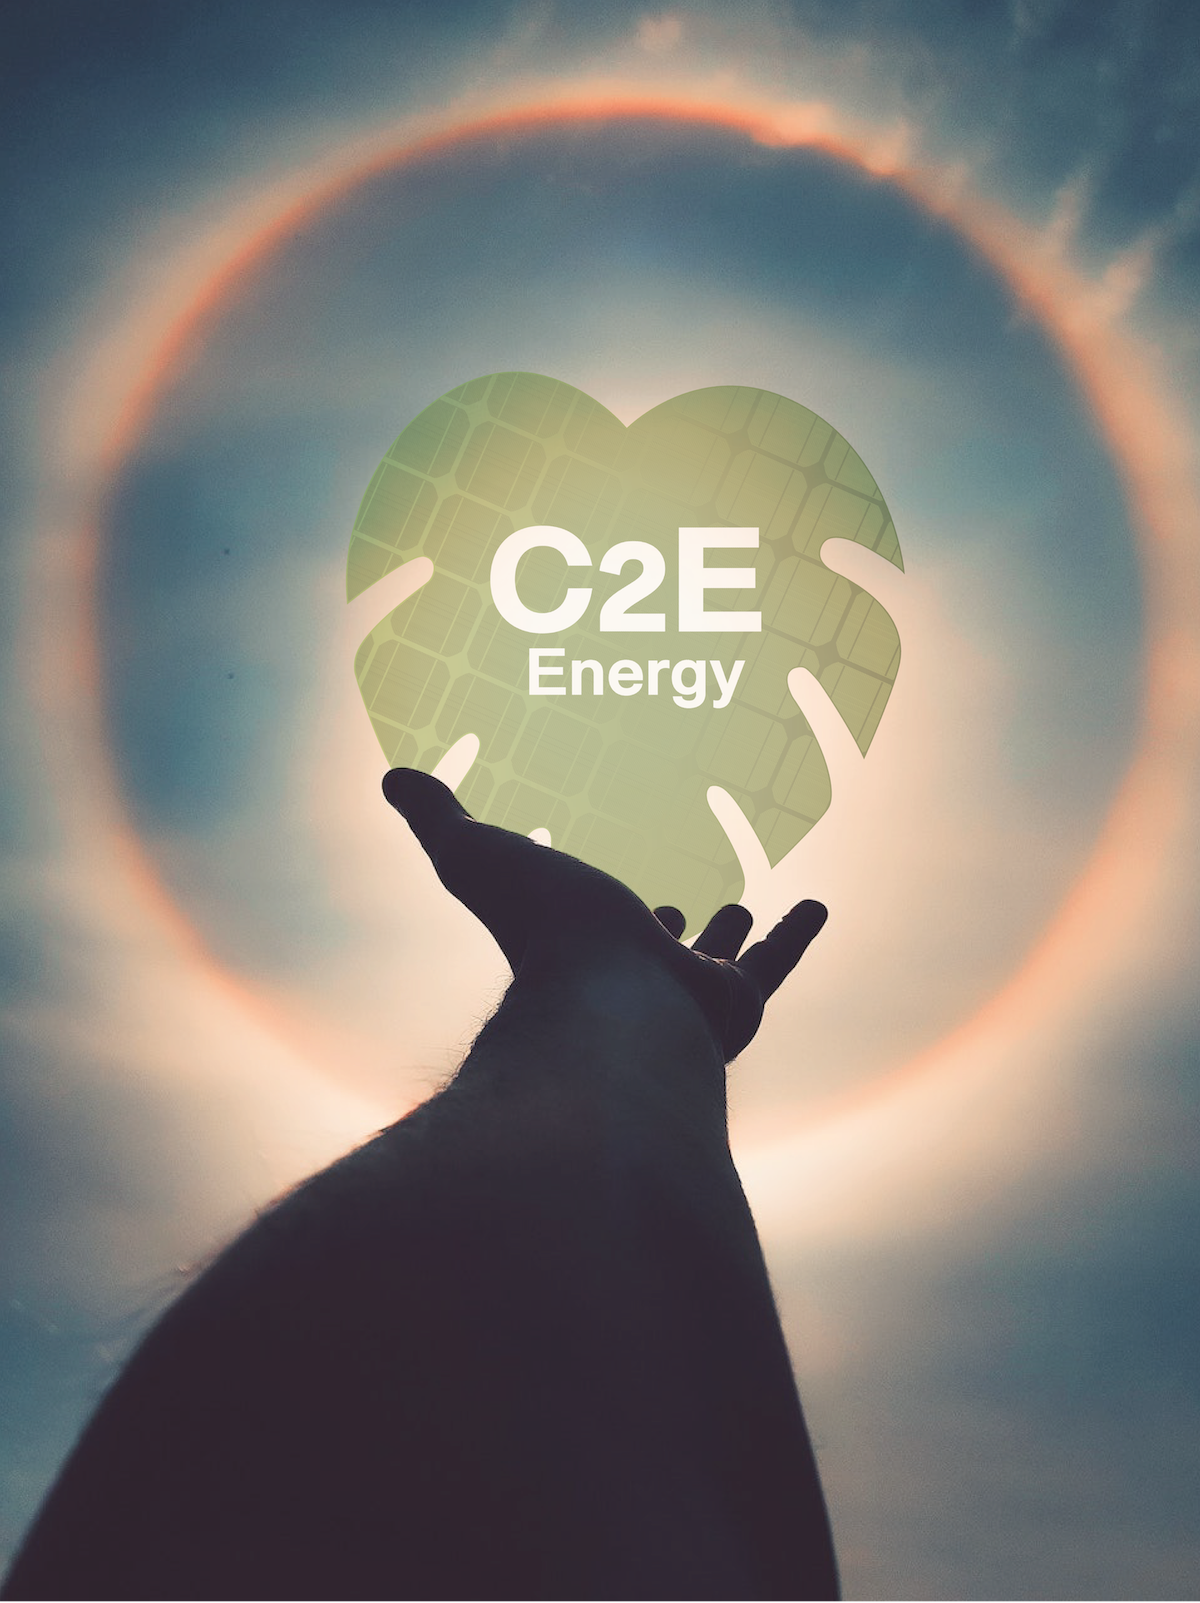 Projet d'installation solaire photovoltaique ? Économisez sur votre facture d'électricité. C2E Energy vous accompagne dans votre projet de transition écologique et économique, avec des solutions d'installation de panneaux solaires adaptées (surtout) à vos besoins.